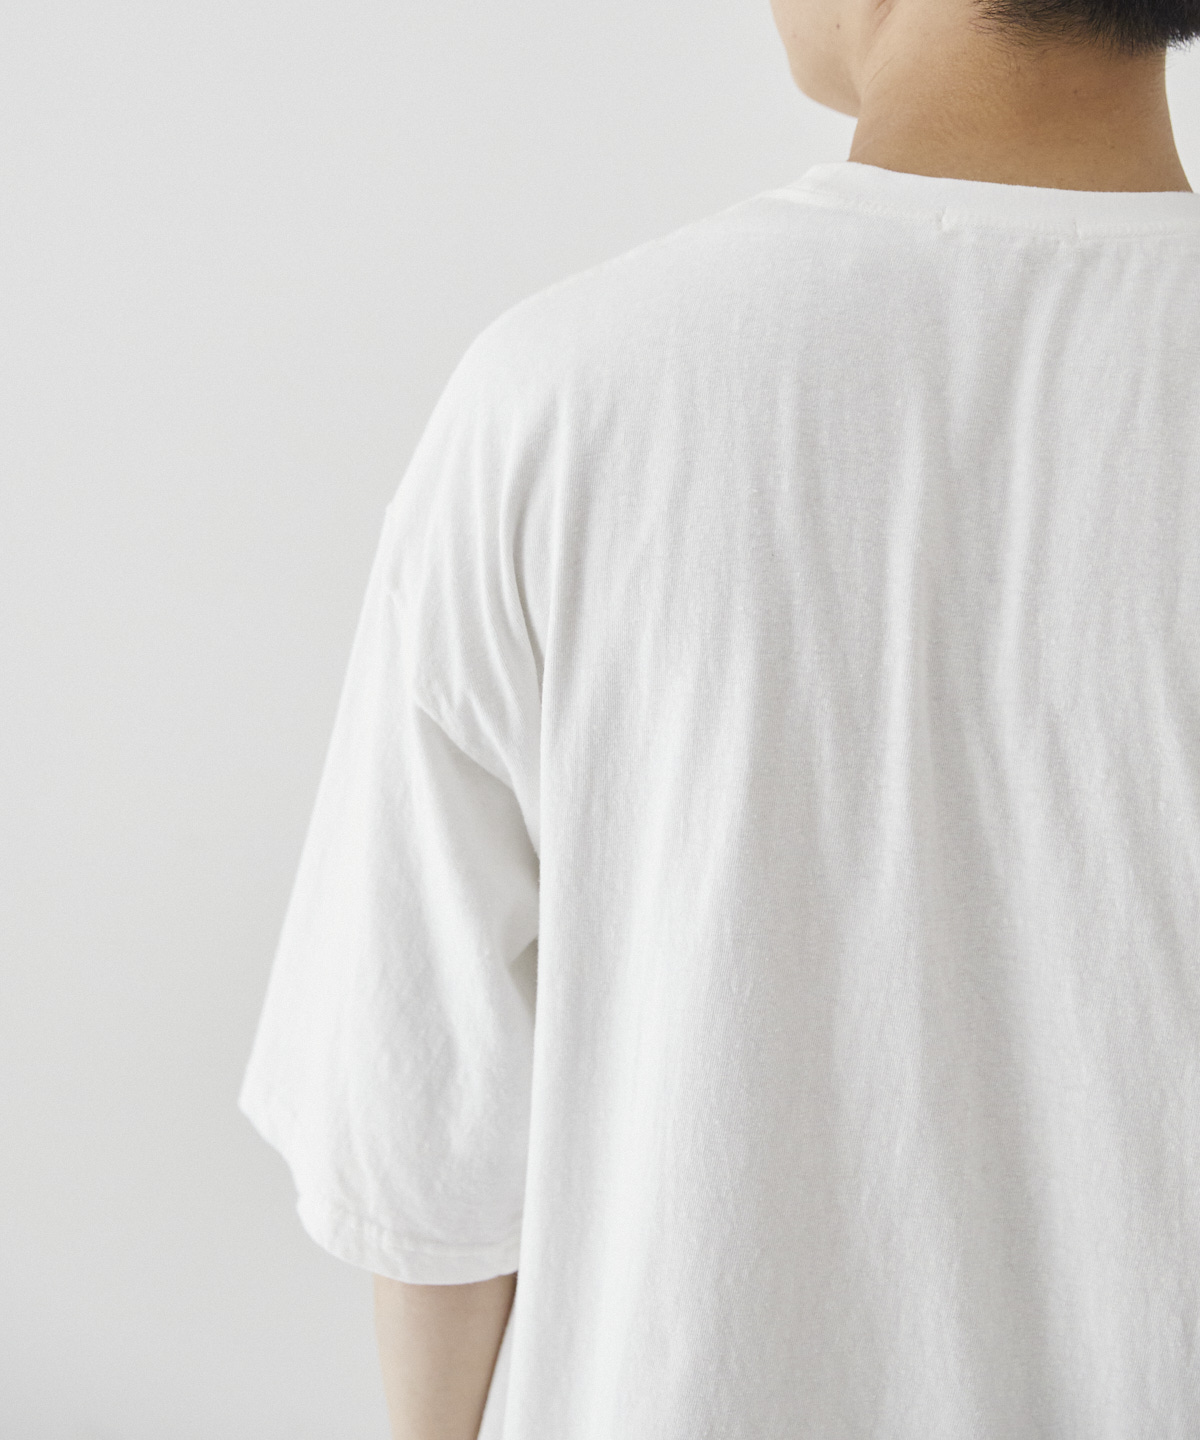 正規販売店】 ENFOLDTSHIRT Tシャツ Tシャツ/カットソー(半袖/袖なし 